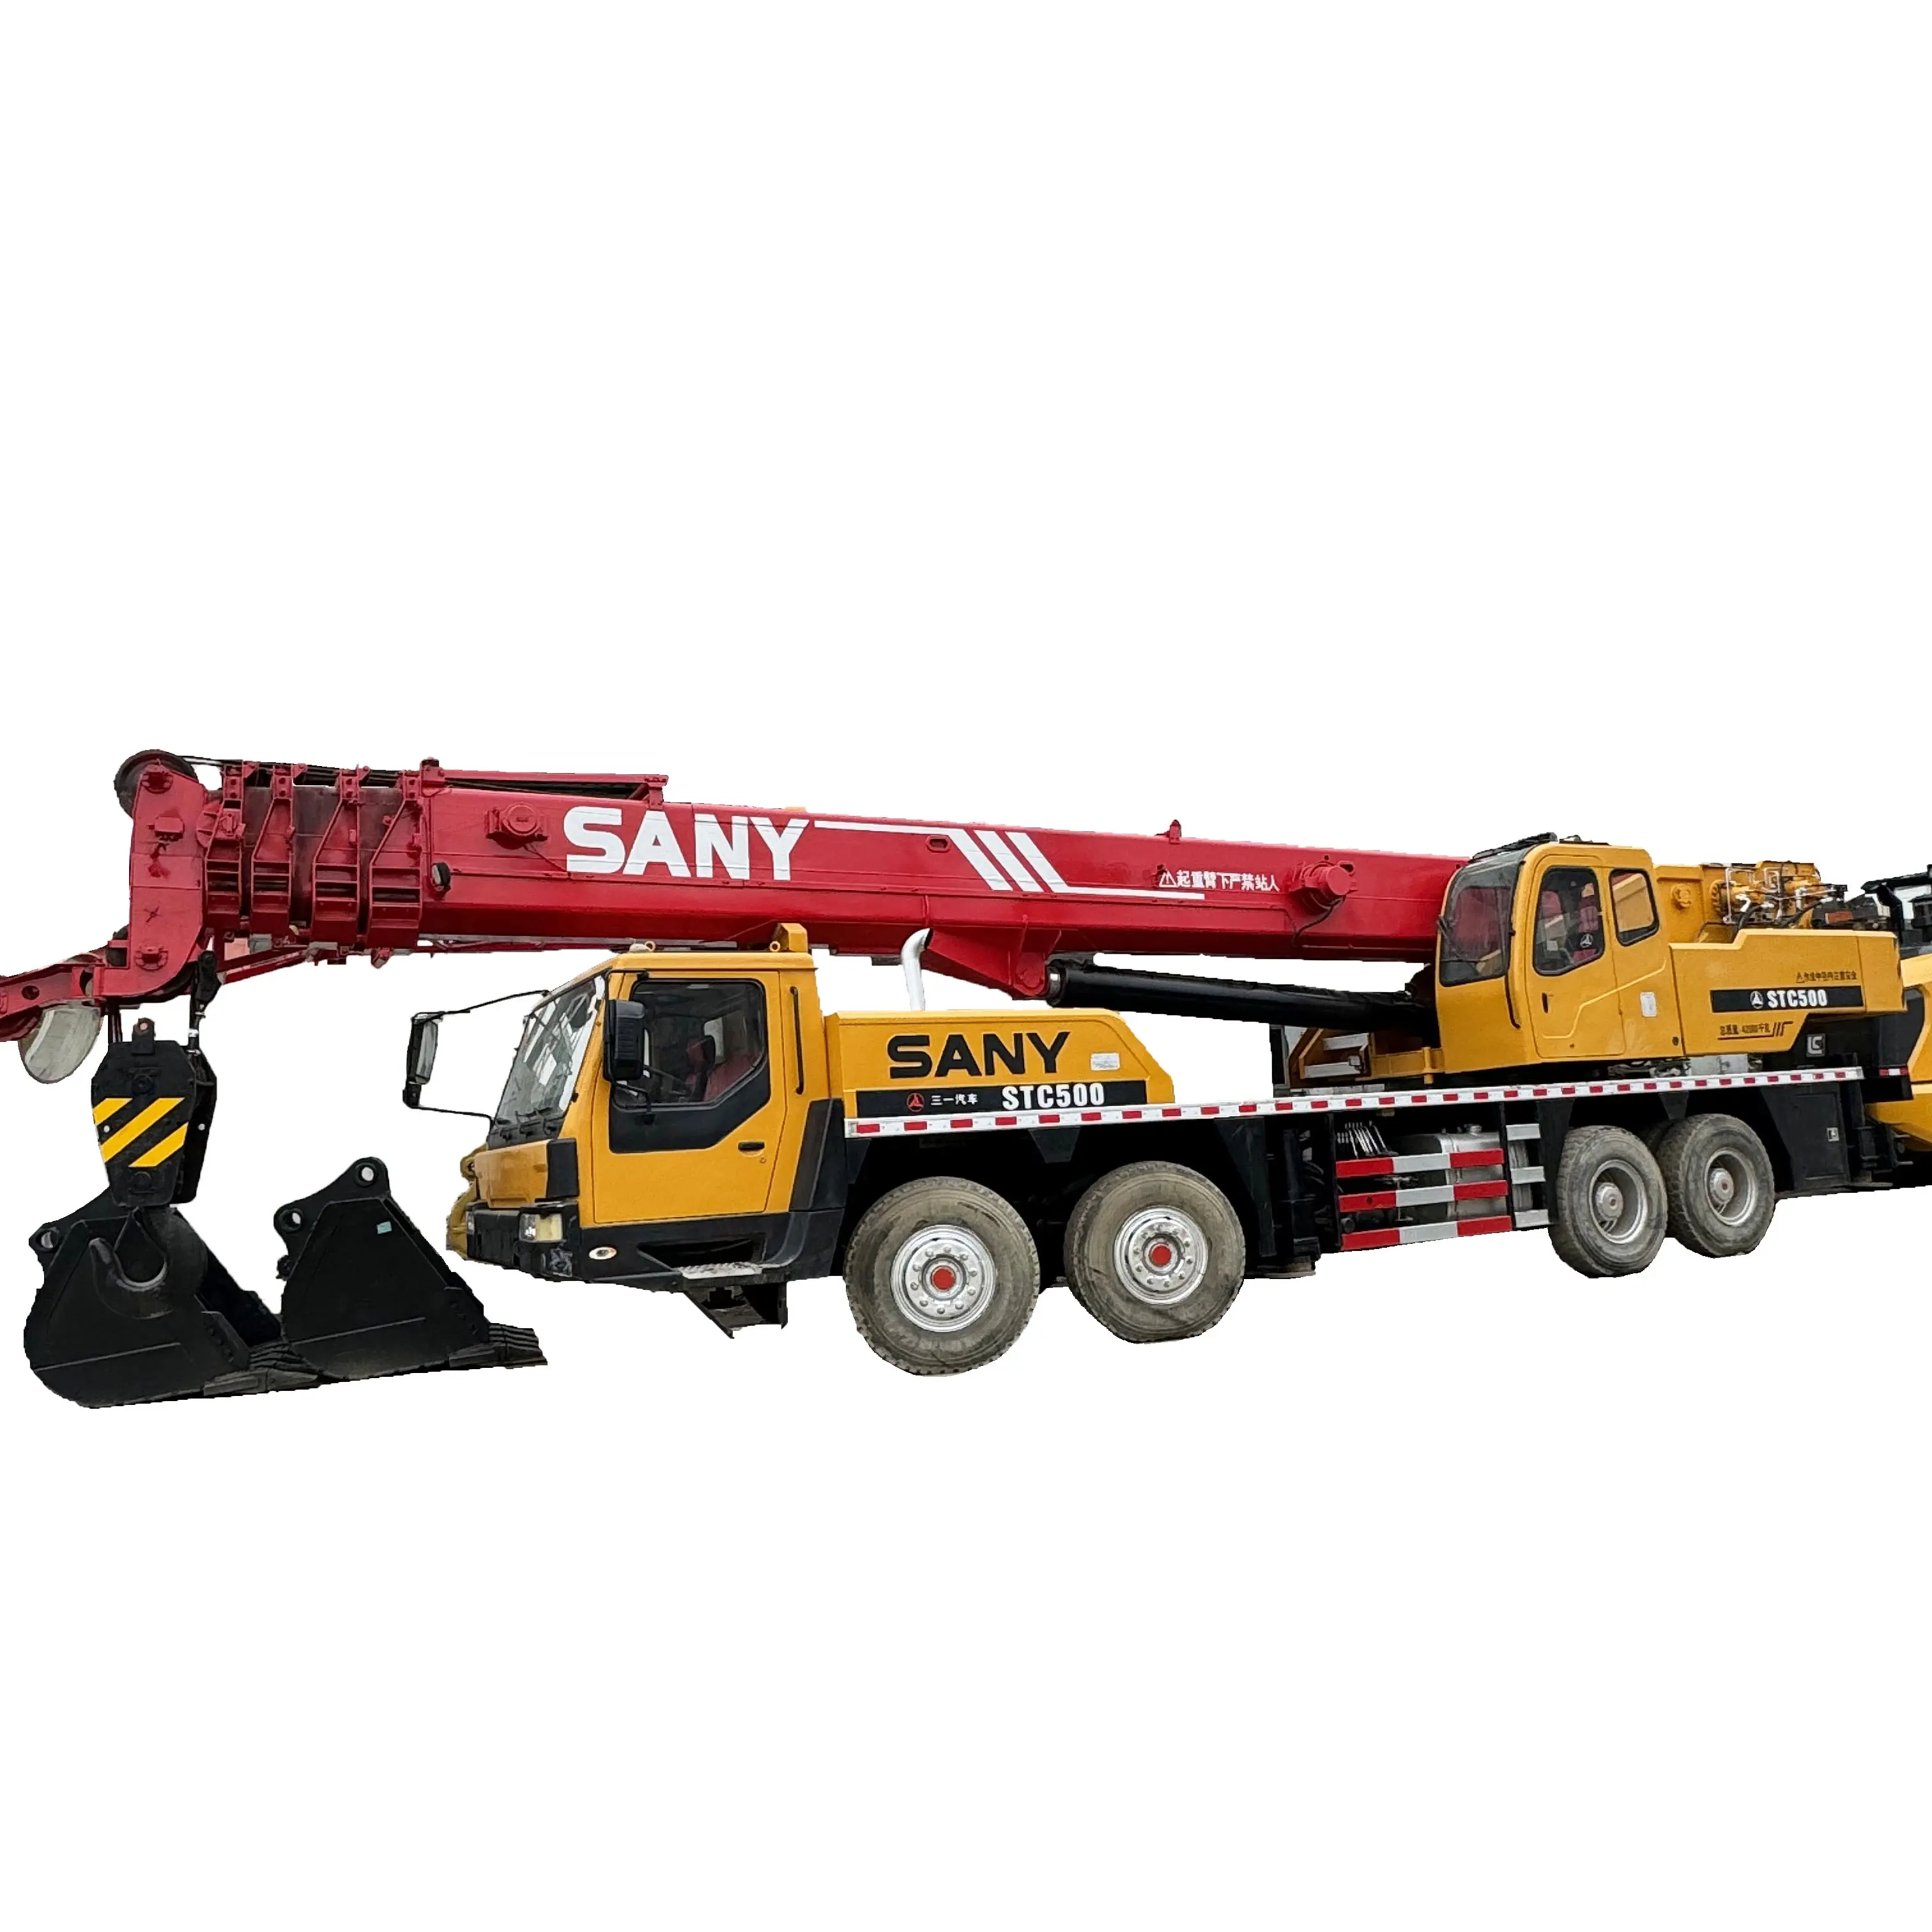 Grue de camion d'occasion de 50 tonnes Sany STC500 grue mobile hydraulique d'occasion prix bon marché grue de camion d'occasion